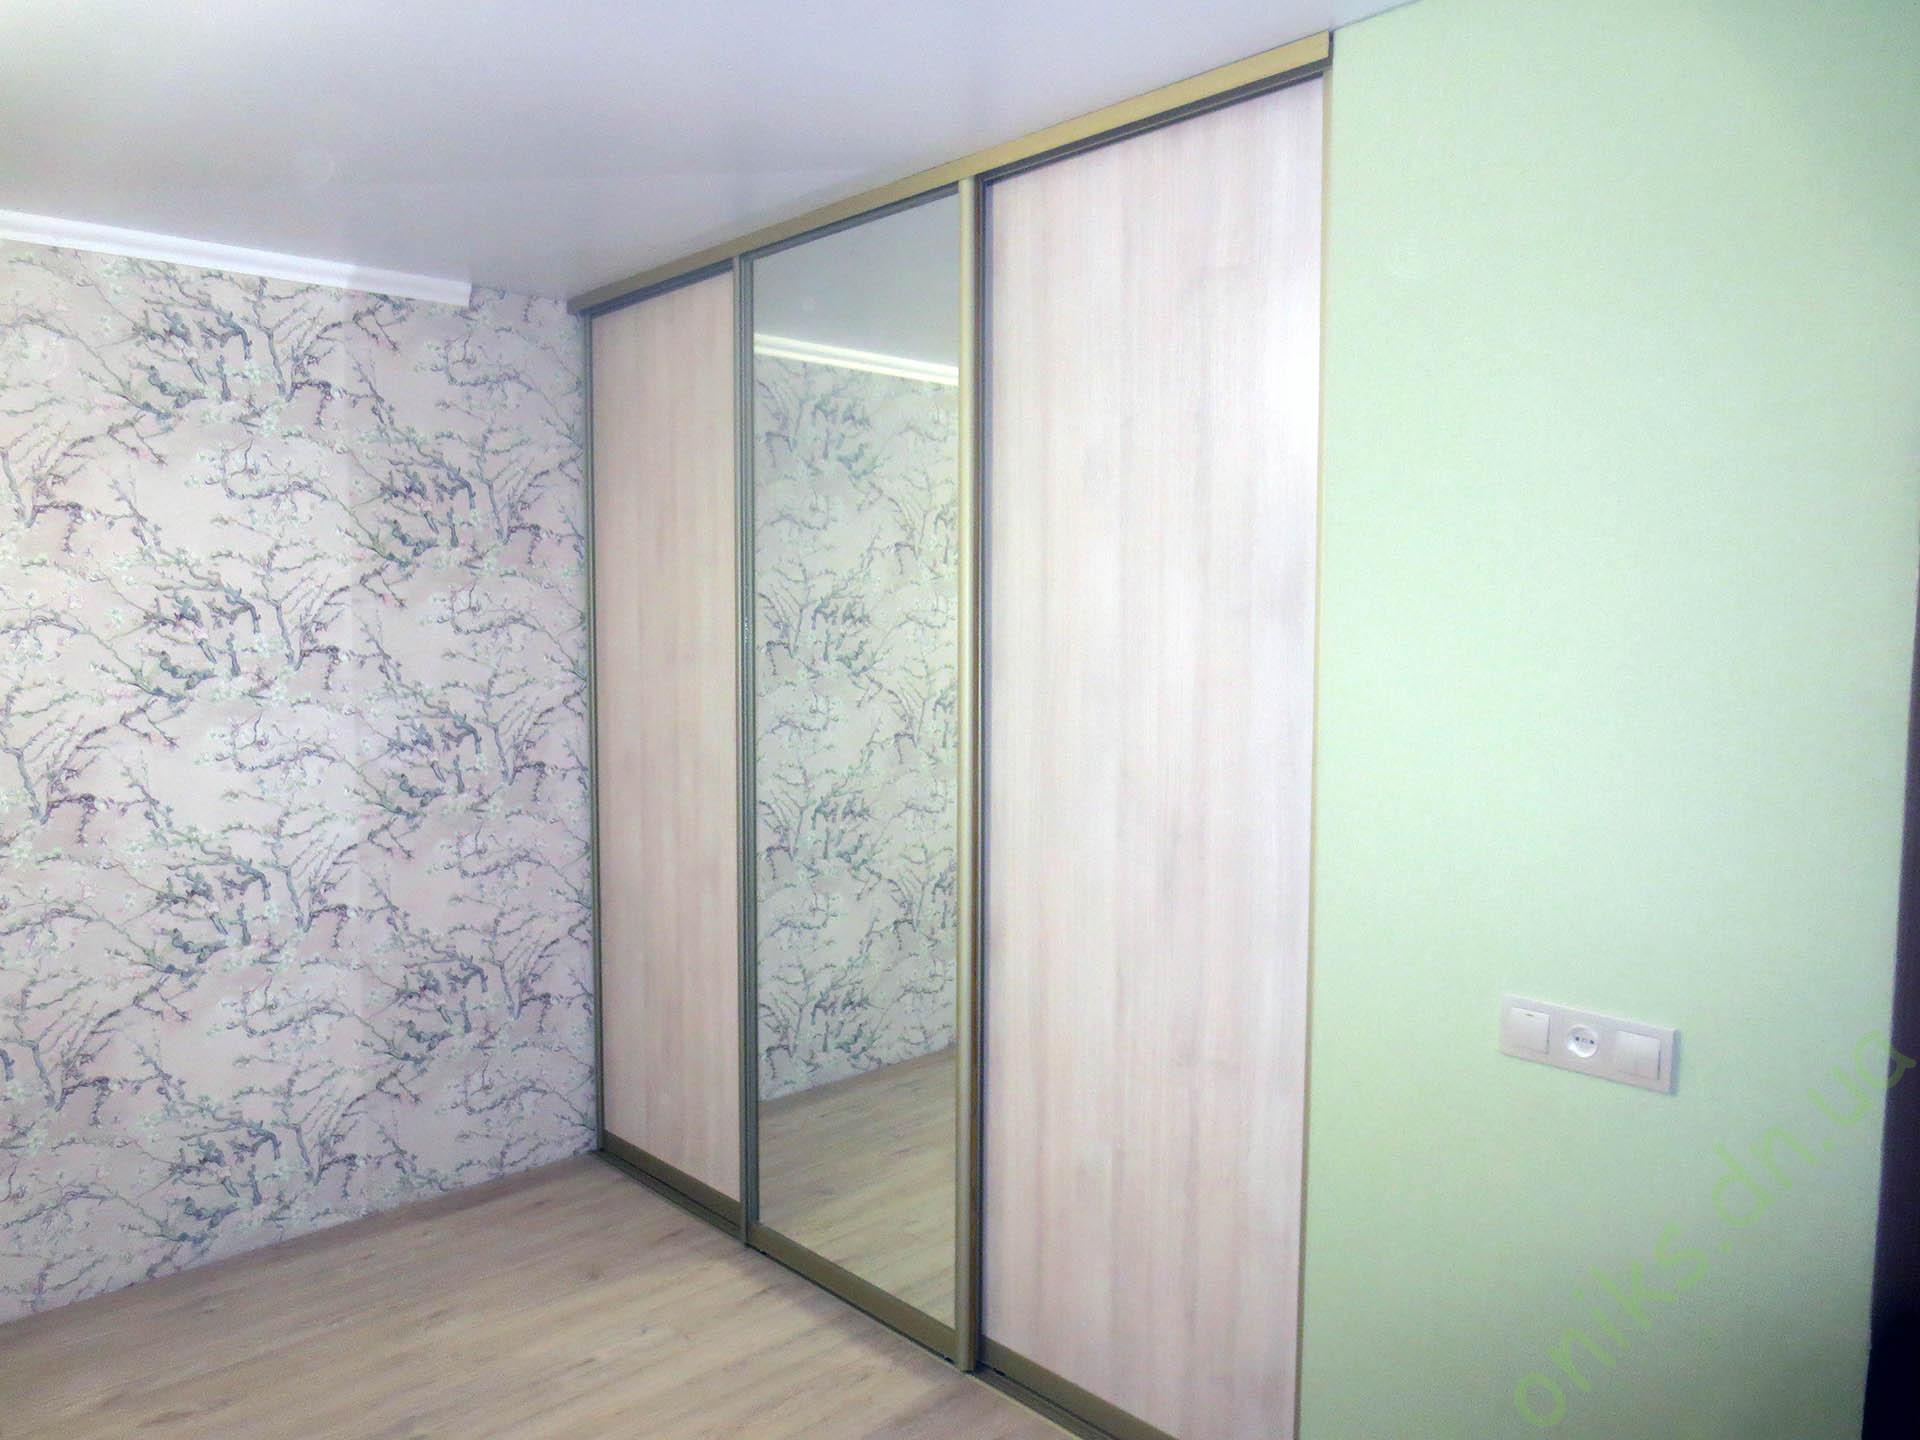 Купить шкаф для гардеробной с раздвижными дверями в Донецке